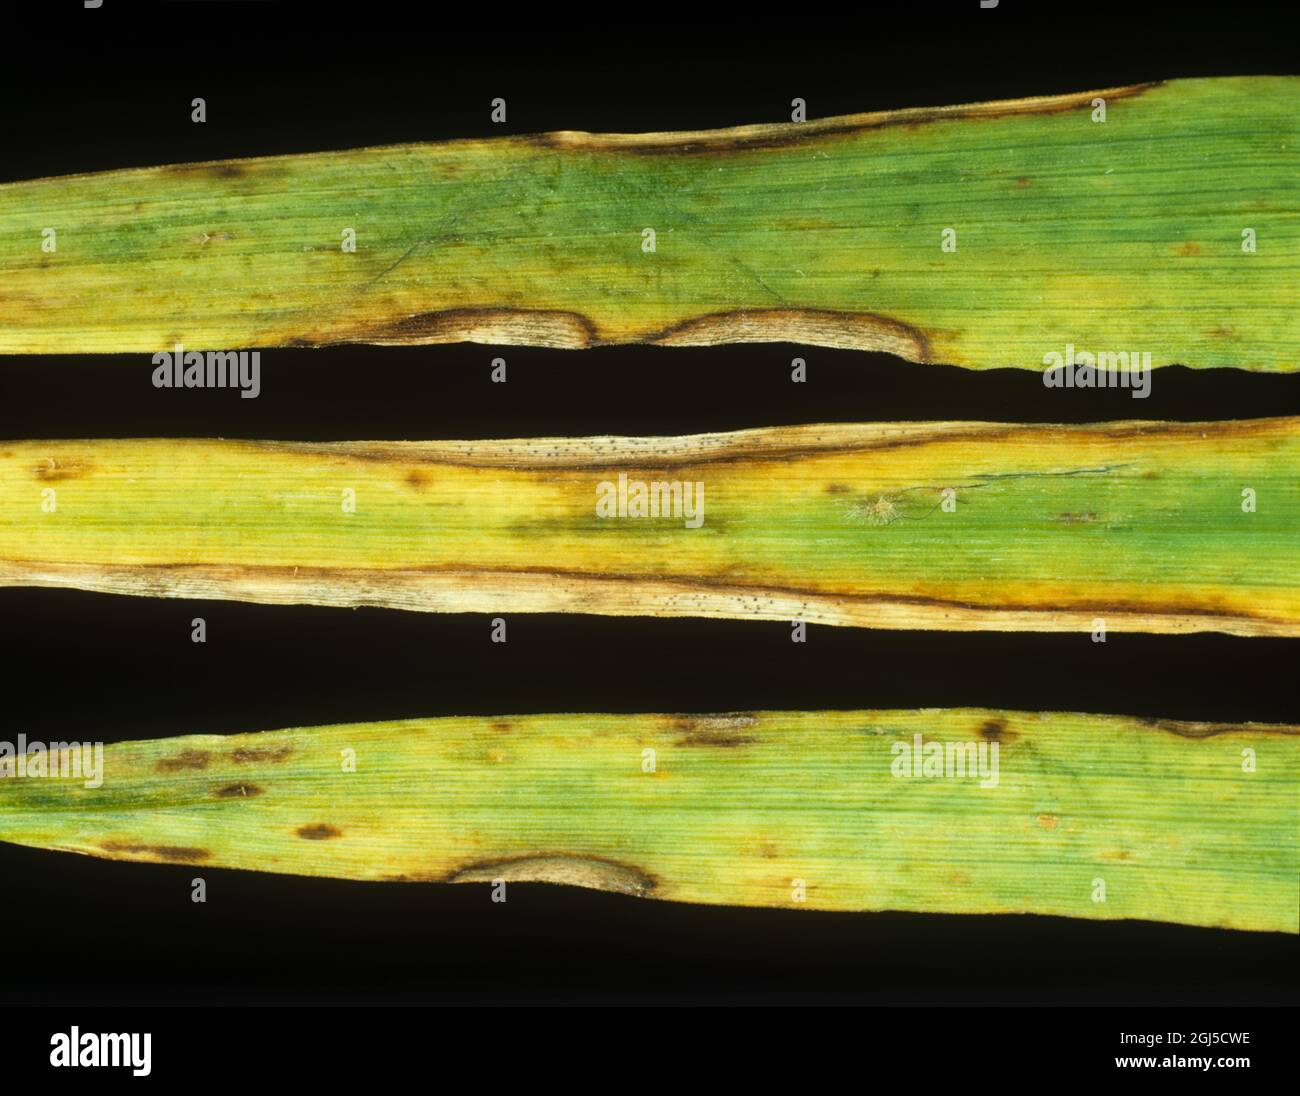 Ascochyta-Blattfleck oder Blattfäule (Ascochyta hortei) bei einer Erkrankung an der Peripherie der Gerstenblätter Stockfoto